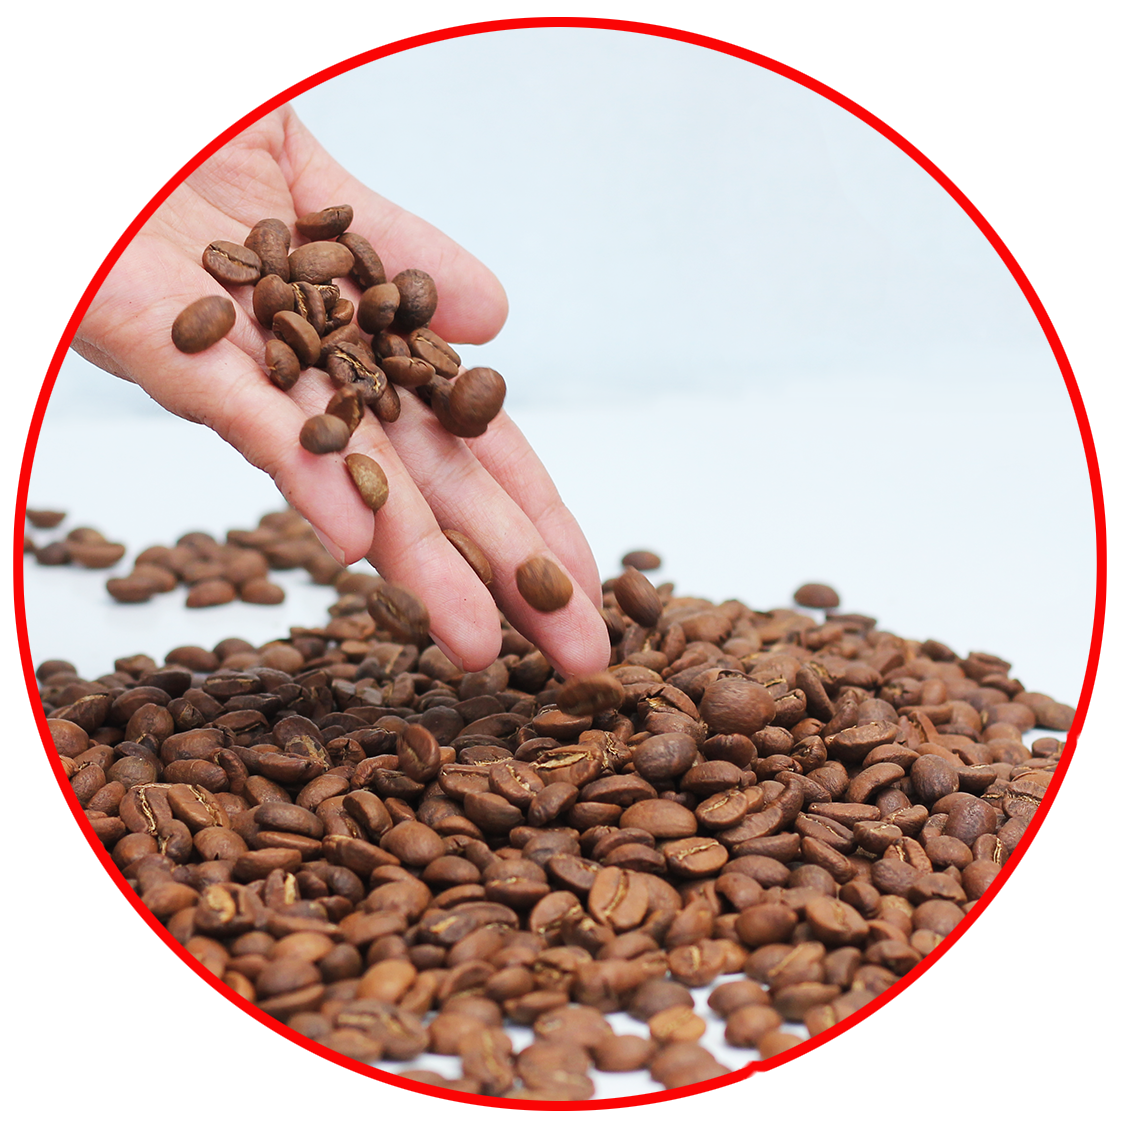 coffee 1kg cà phê rang mộc gói đậm gu thành phần 80% robusta + 20% arabica - cafe ngon nguyên chất đến từ đắk lắk - 2 gói mỗi gói 500gr - cam kết nguyên chất - xay sẵn dùng pha phin 1